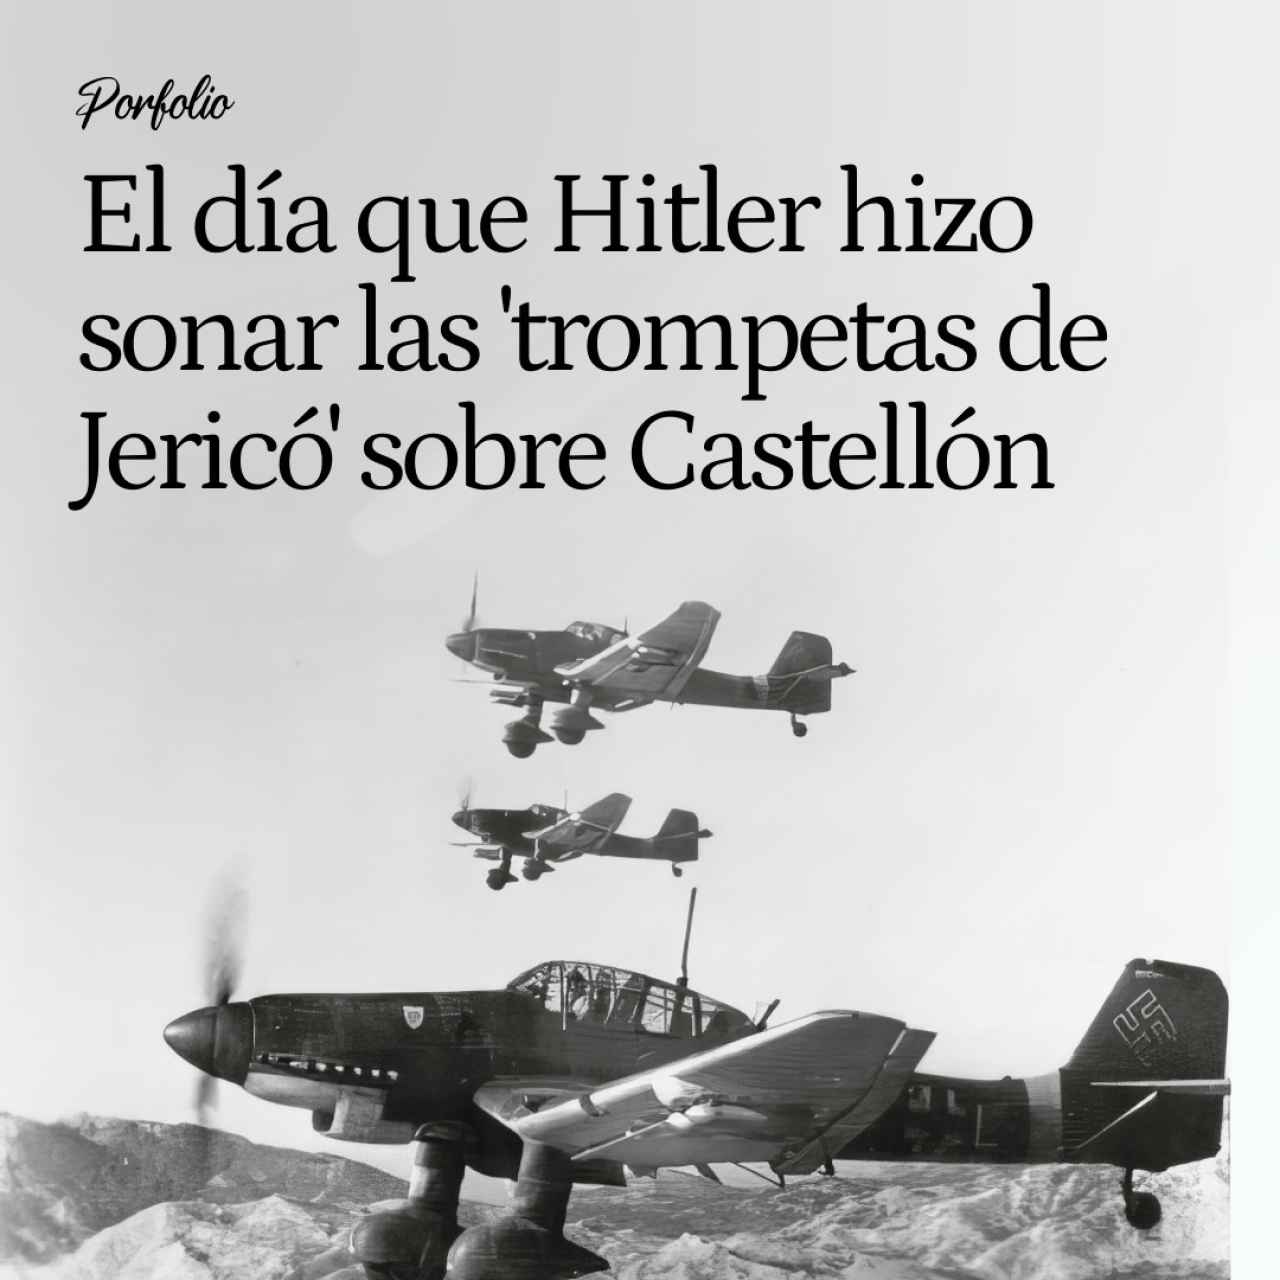 El día que Hitler hizo sonar las 'trompetas de Jericó' en España: una masacre en Castellón para probar sus Stuka